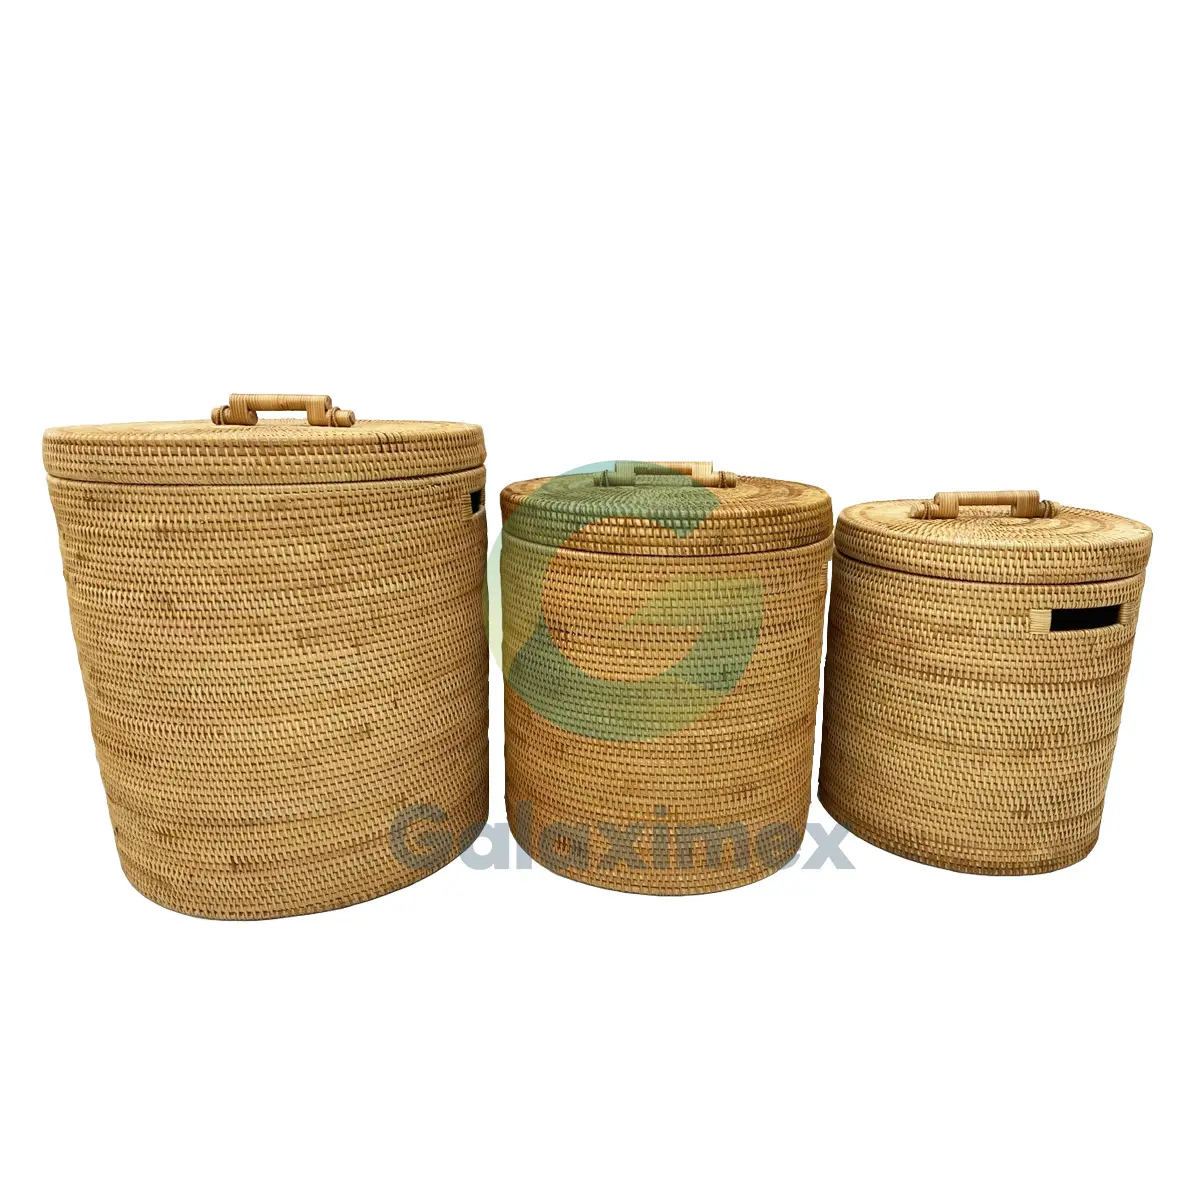 Round natural rattan storage baskets round wicker laundry baskets cheap storage baskets from rattan wicker crafts factory